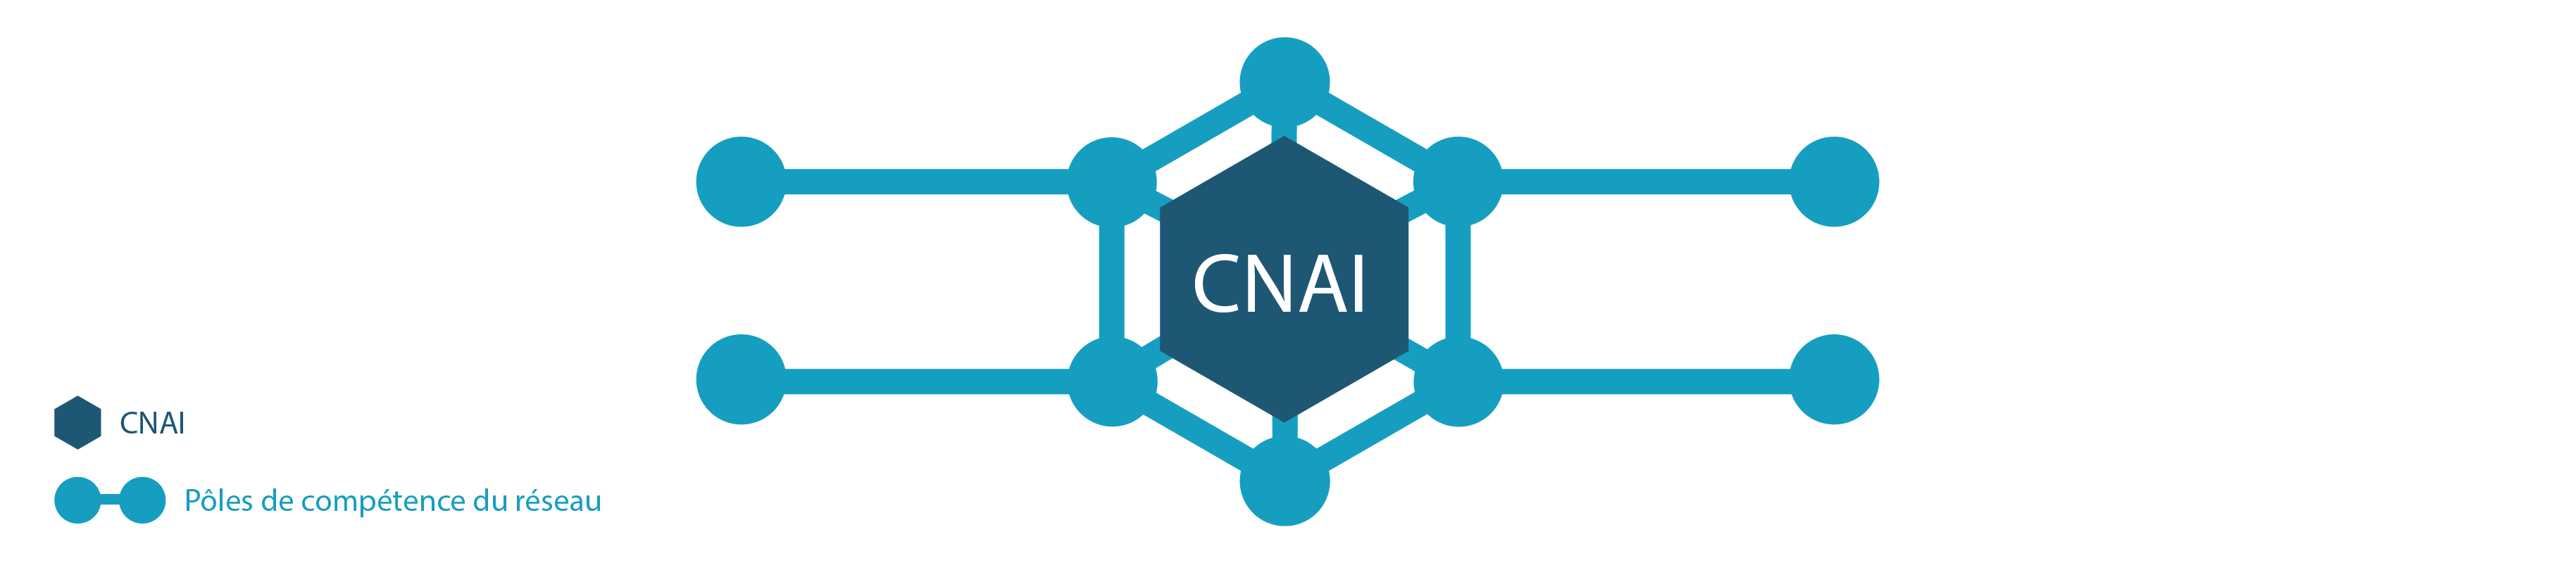 Illustration du réseau. CNAI au centre, nœuds de réseau tout autour